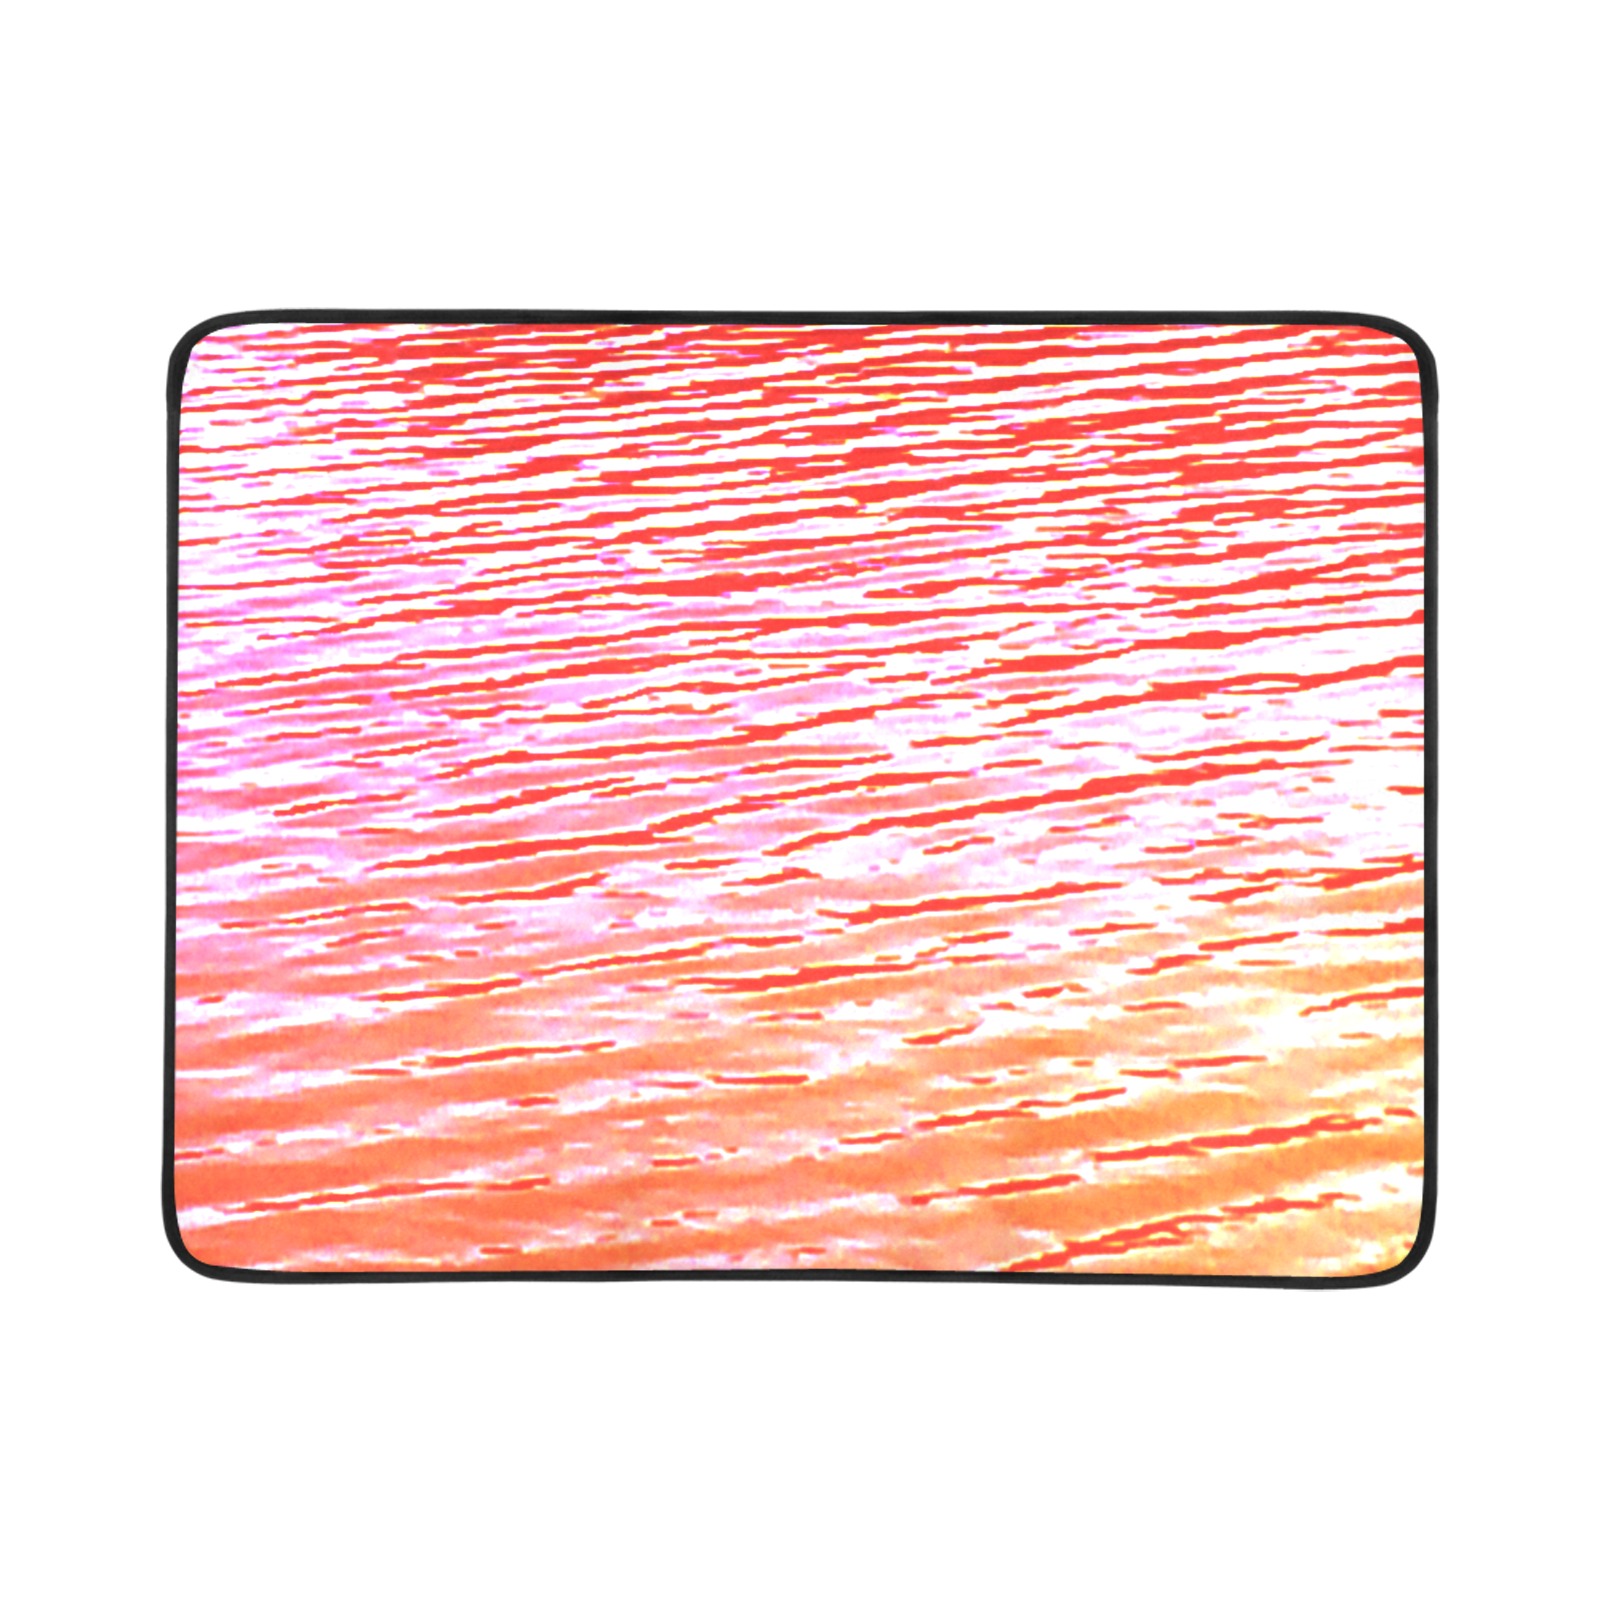 Orange and red water Beach Mat 78"x 60"